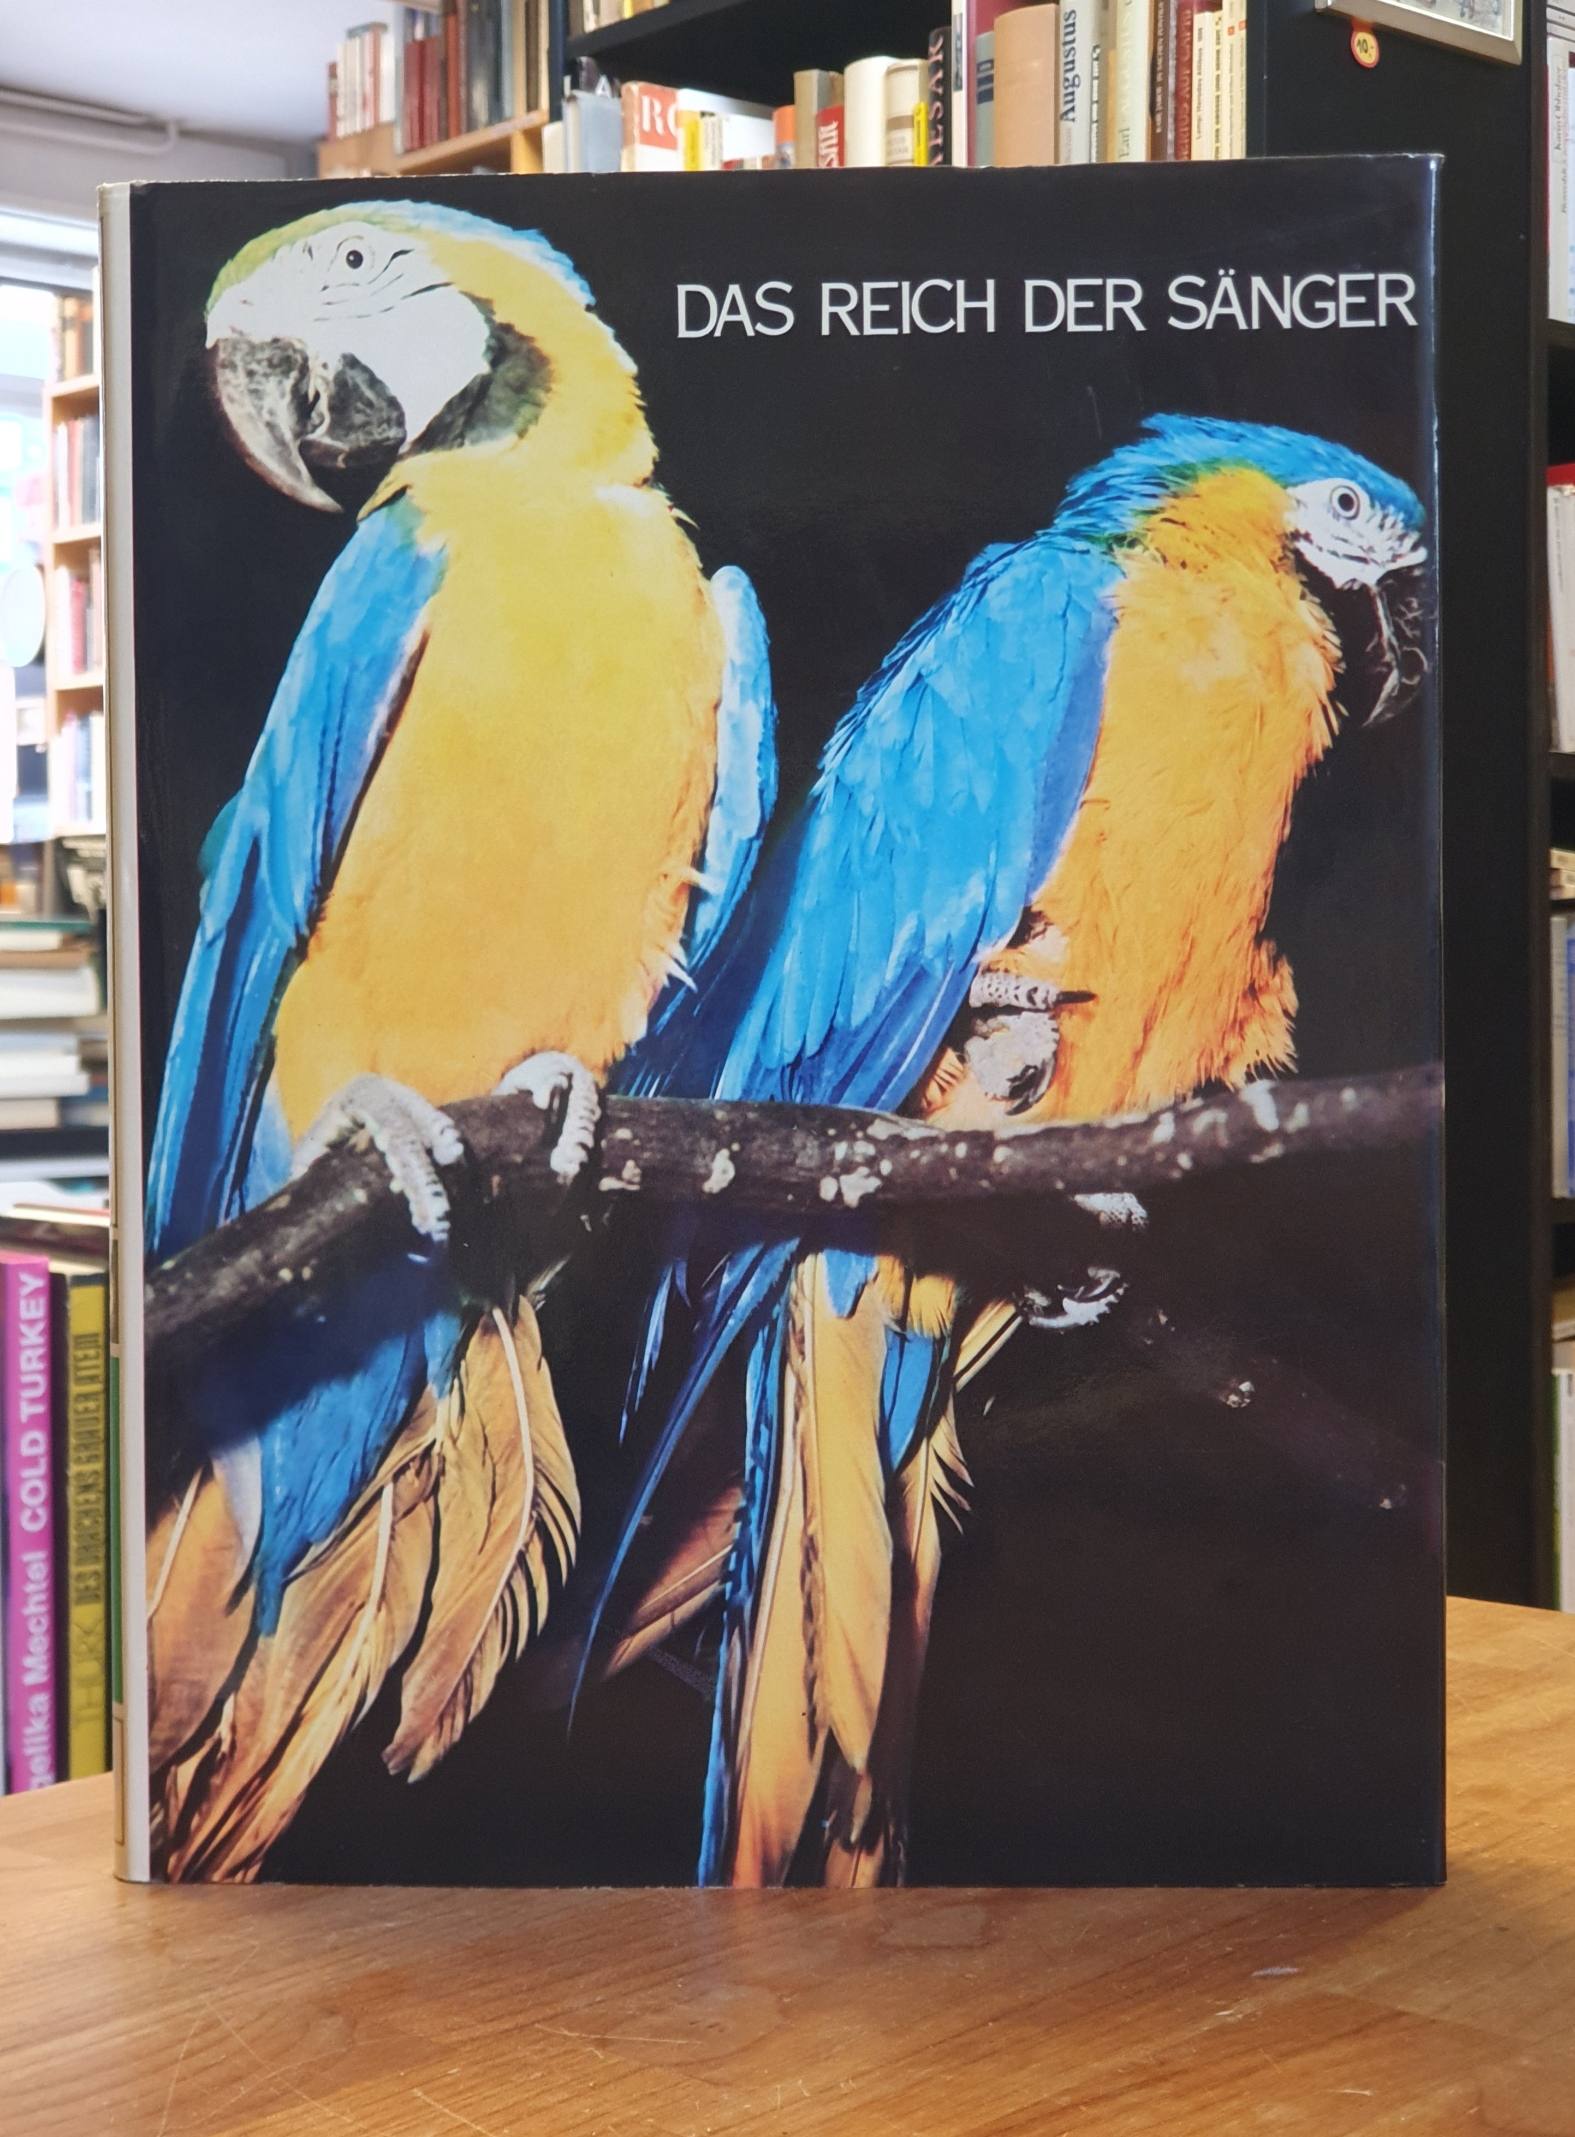 Die Geheimnisse der Tierwelt, Bd. 5: Vögel – Teil 1: Das Reich der Sänger,